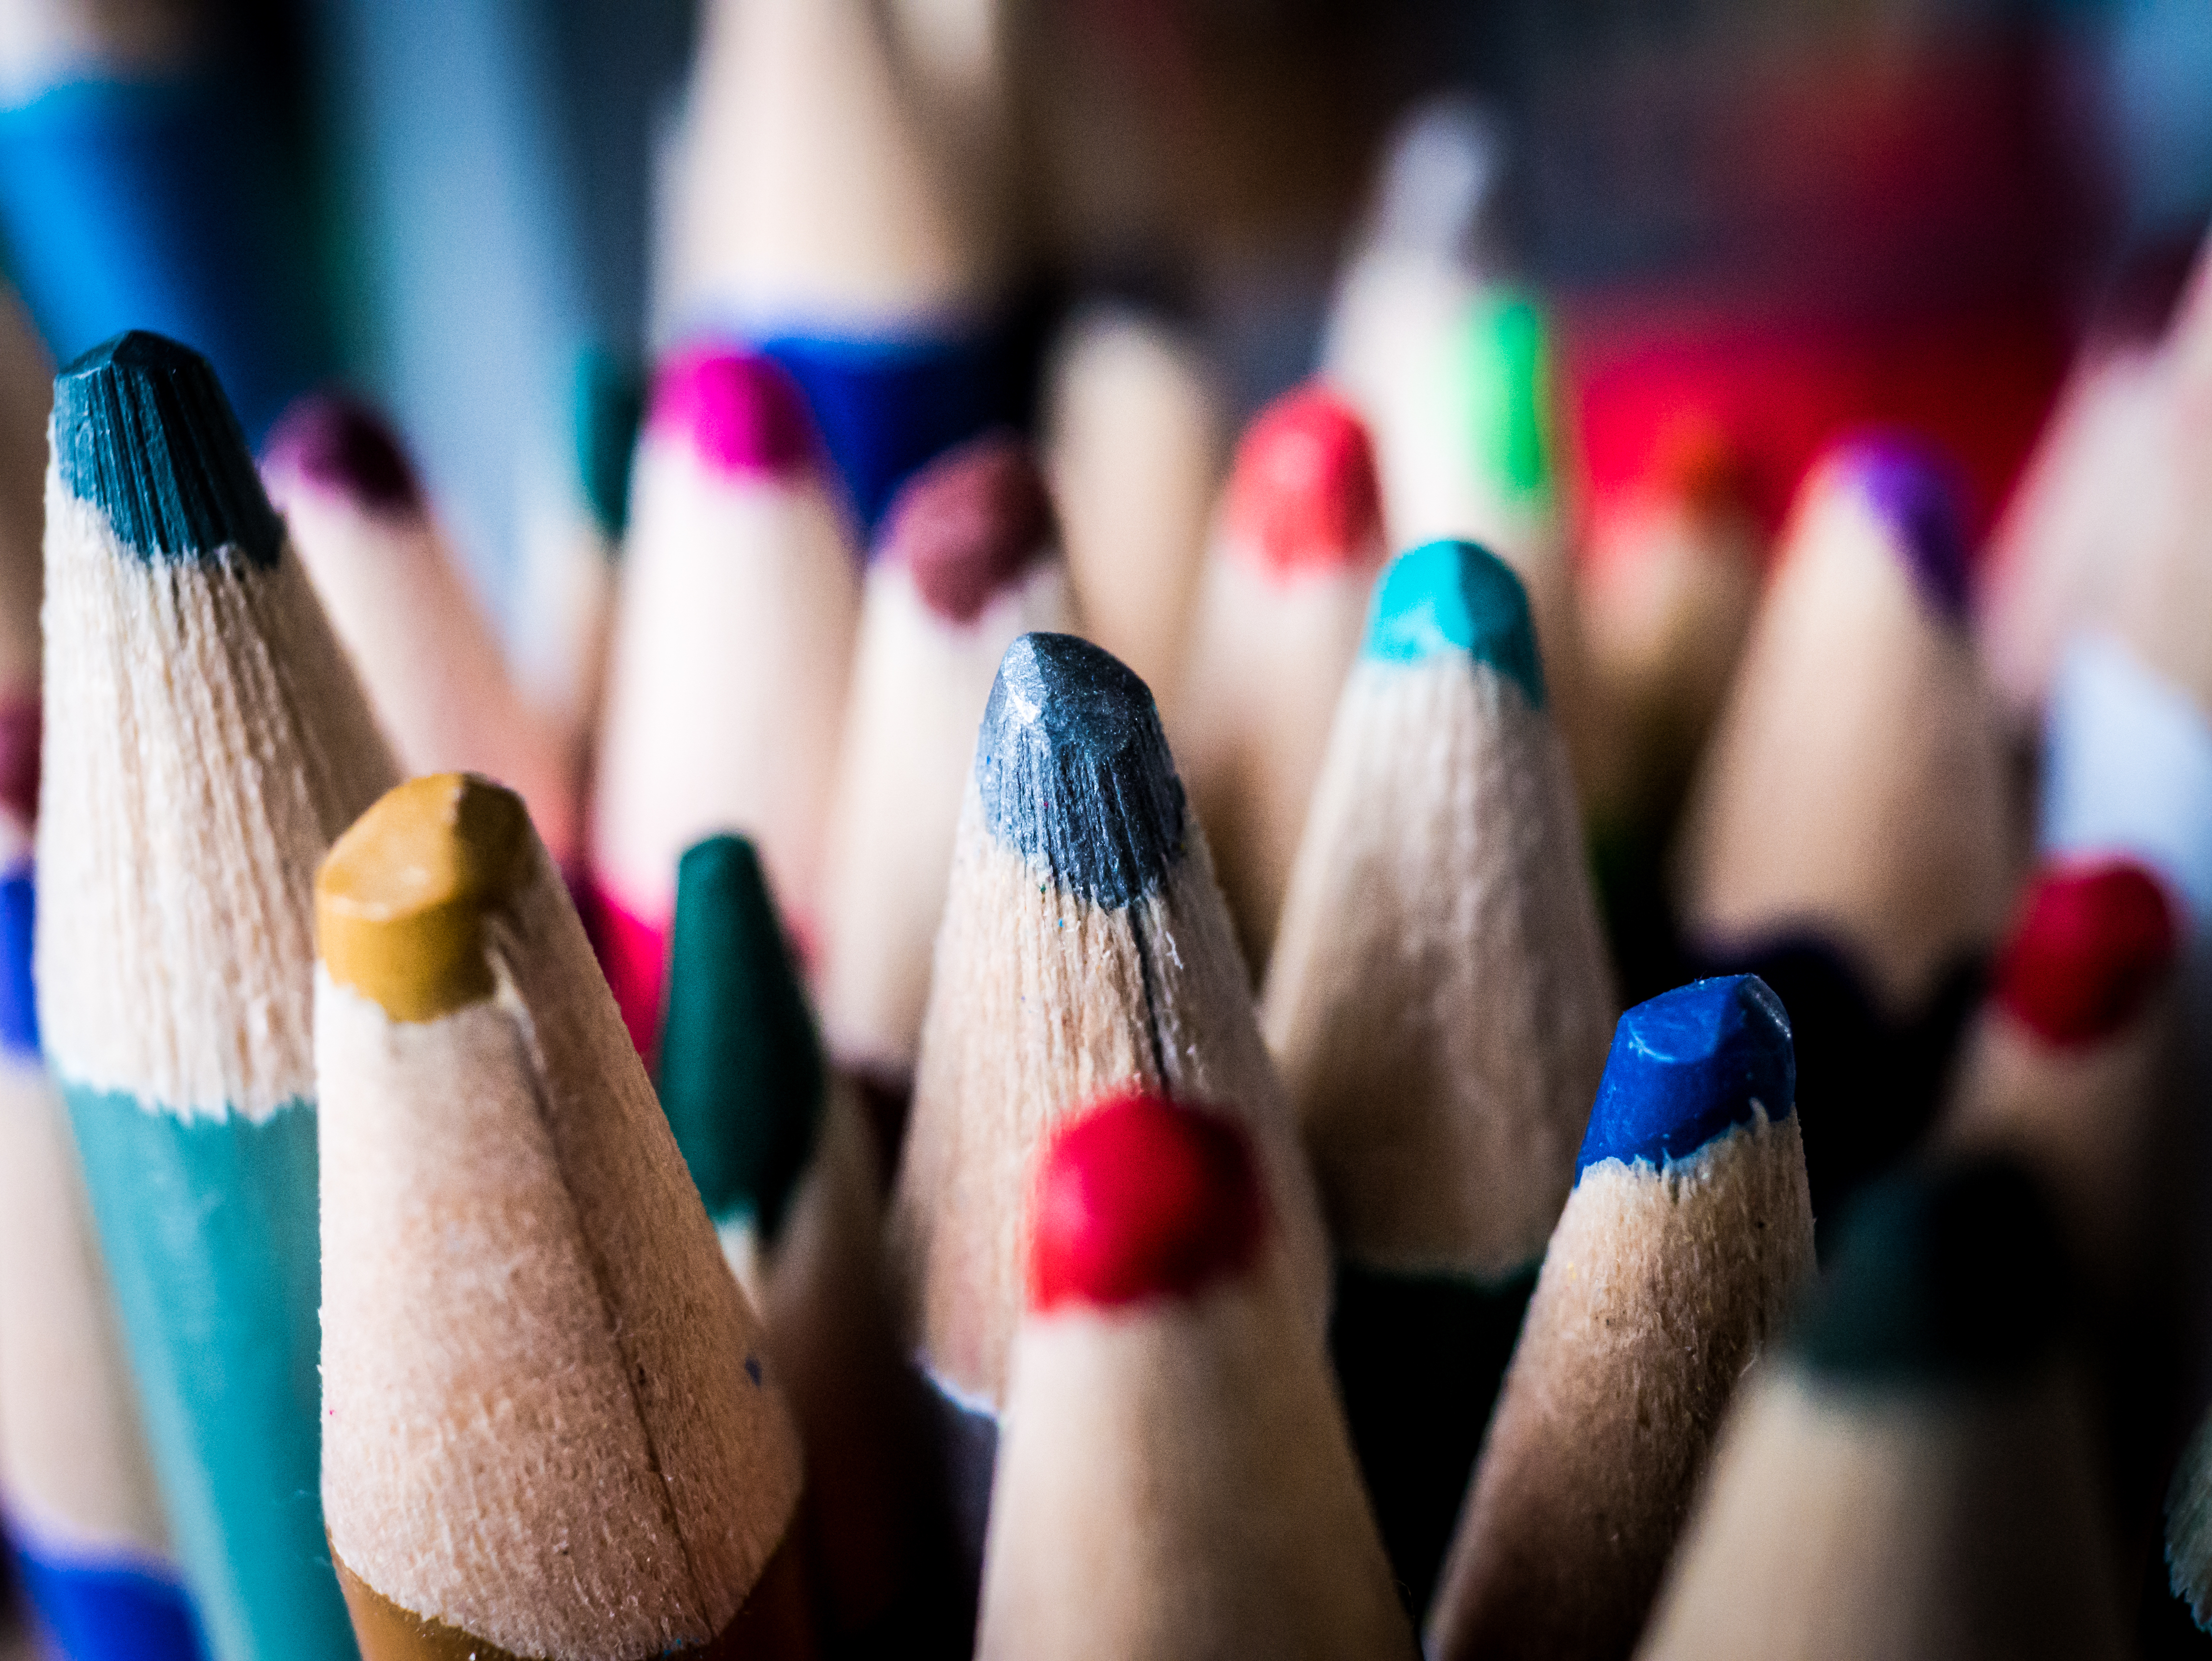 miscellanea, miscellaneous, multicolored, motley, colored pencils, spearhead, prick, colour pencils